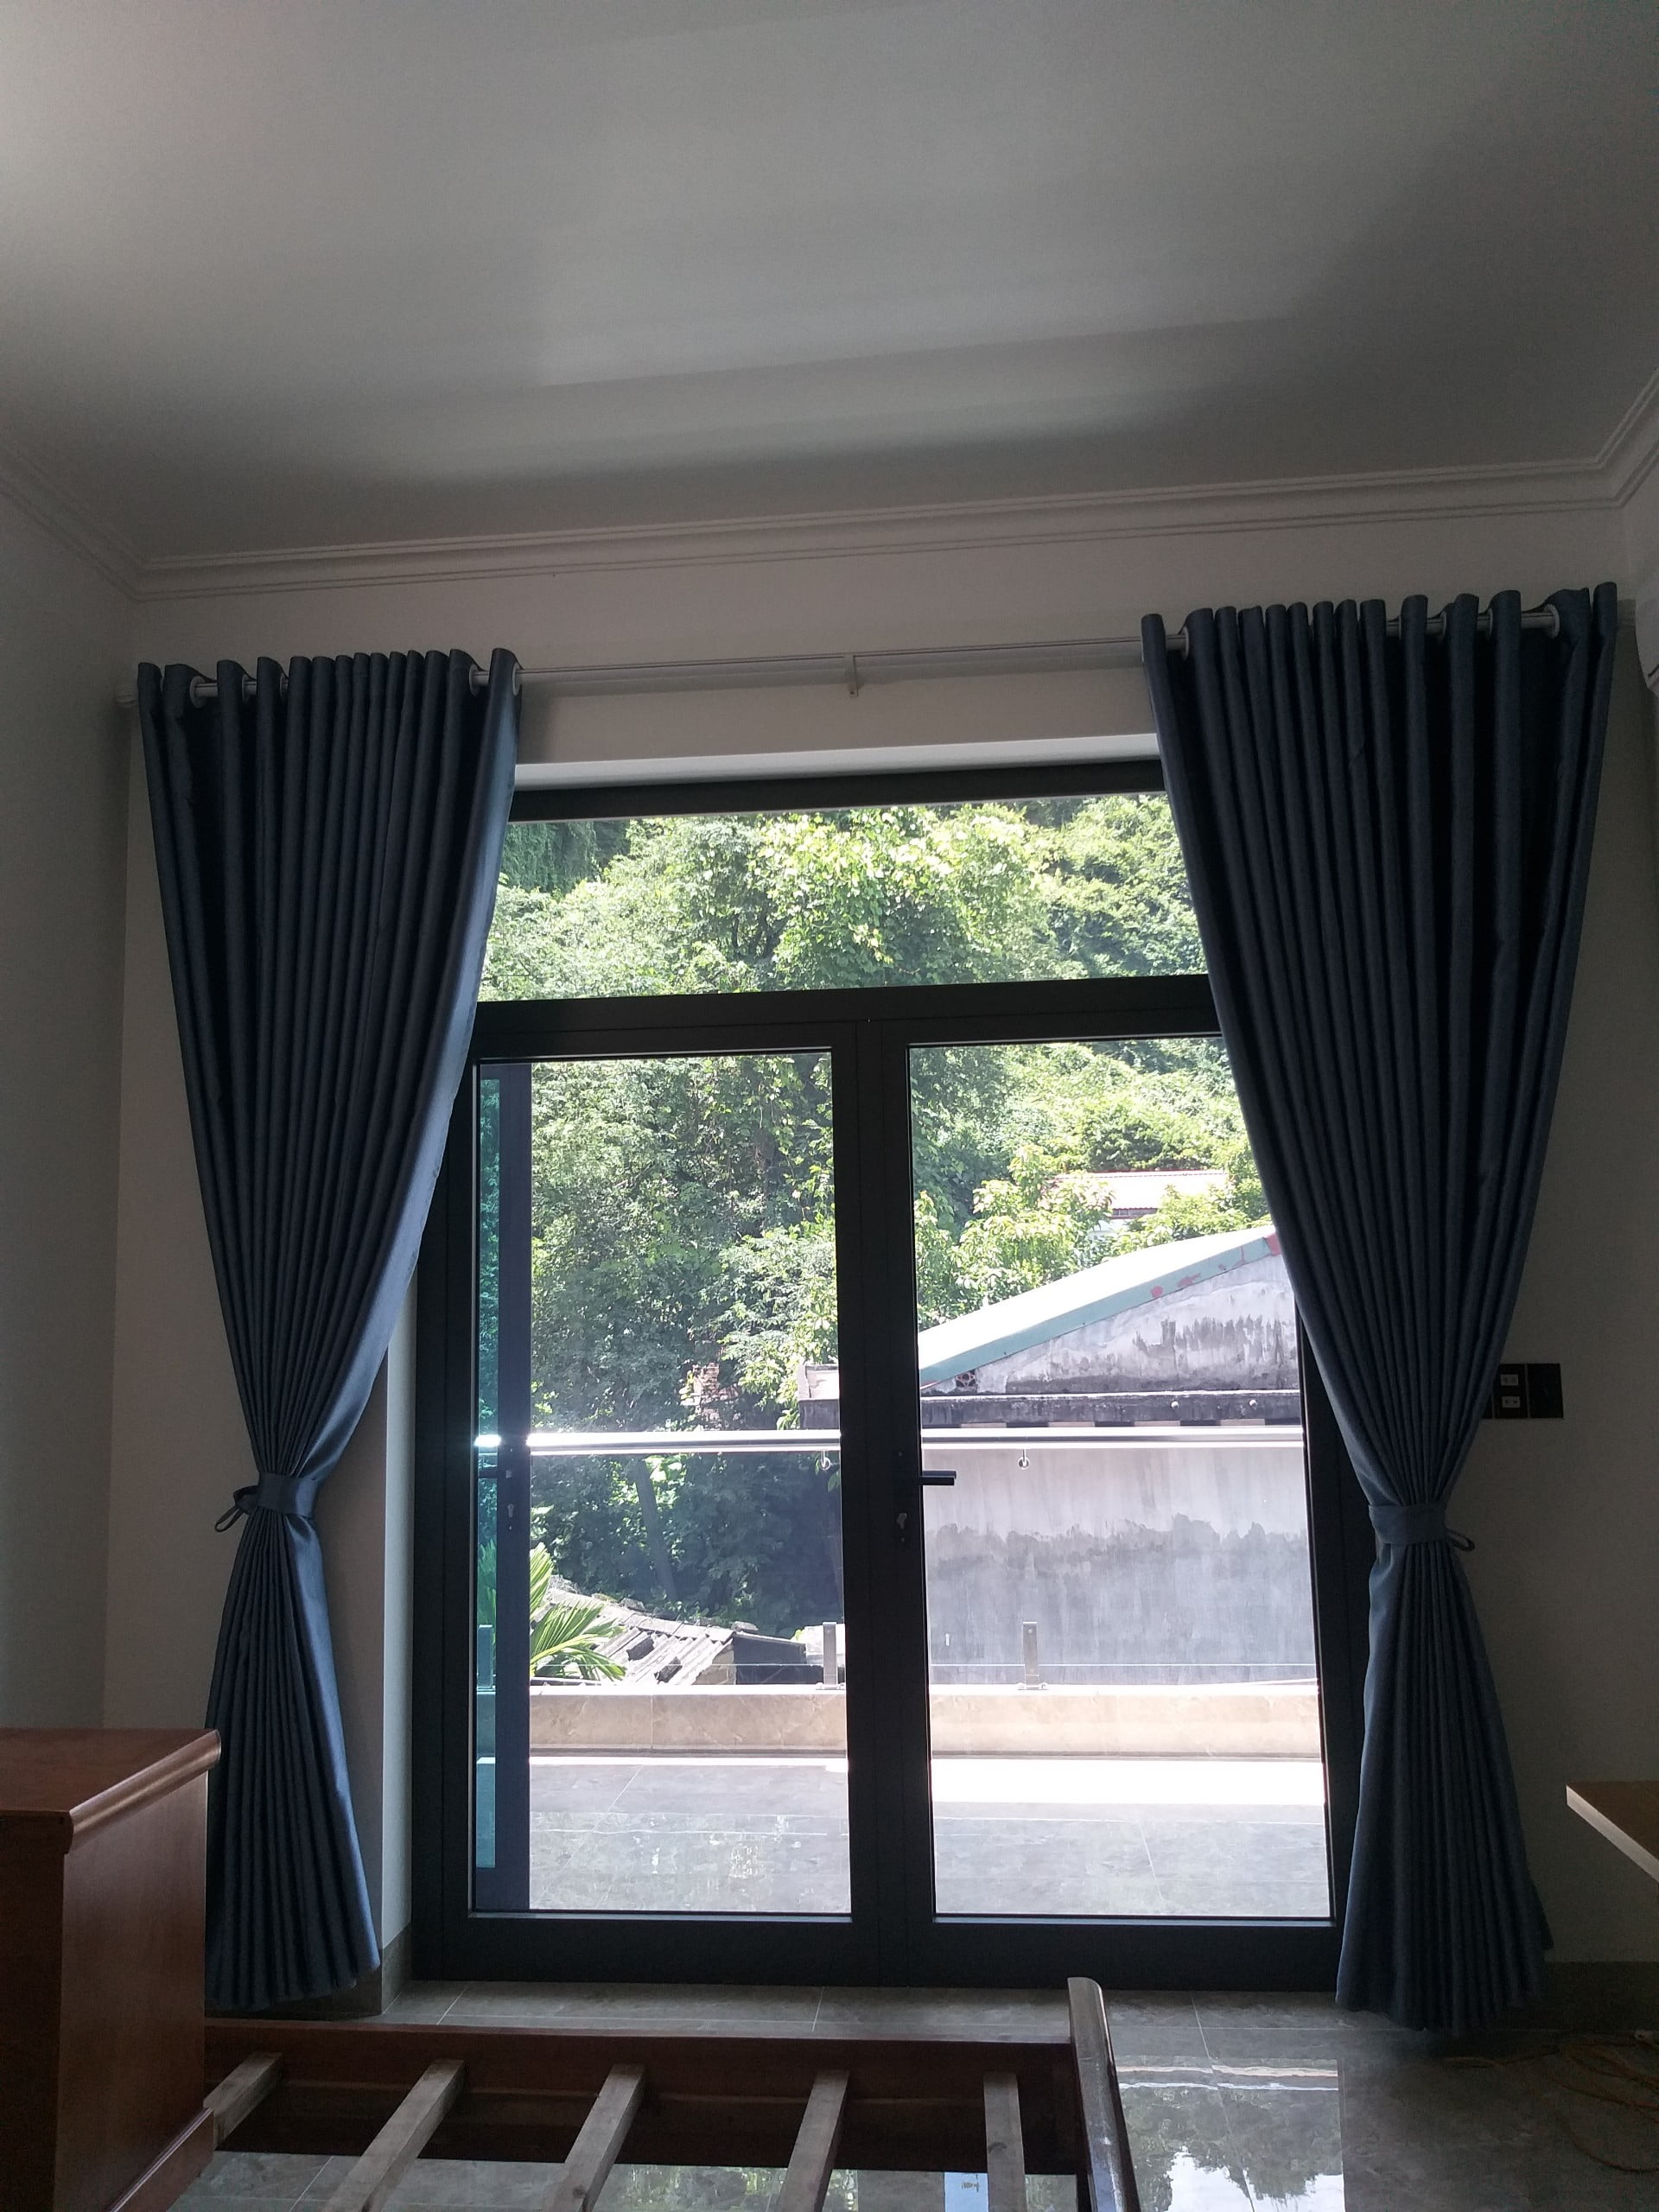 Bộ rèm cản nắng màu xanh than cho phòng ngủ to